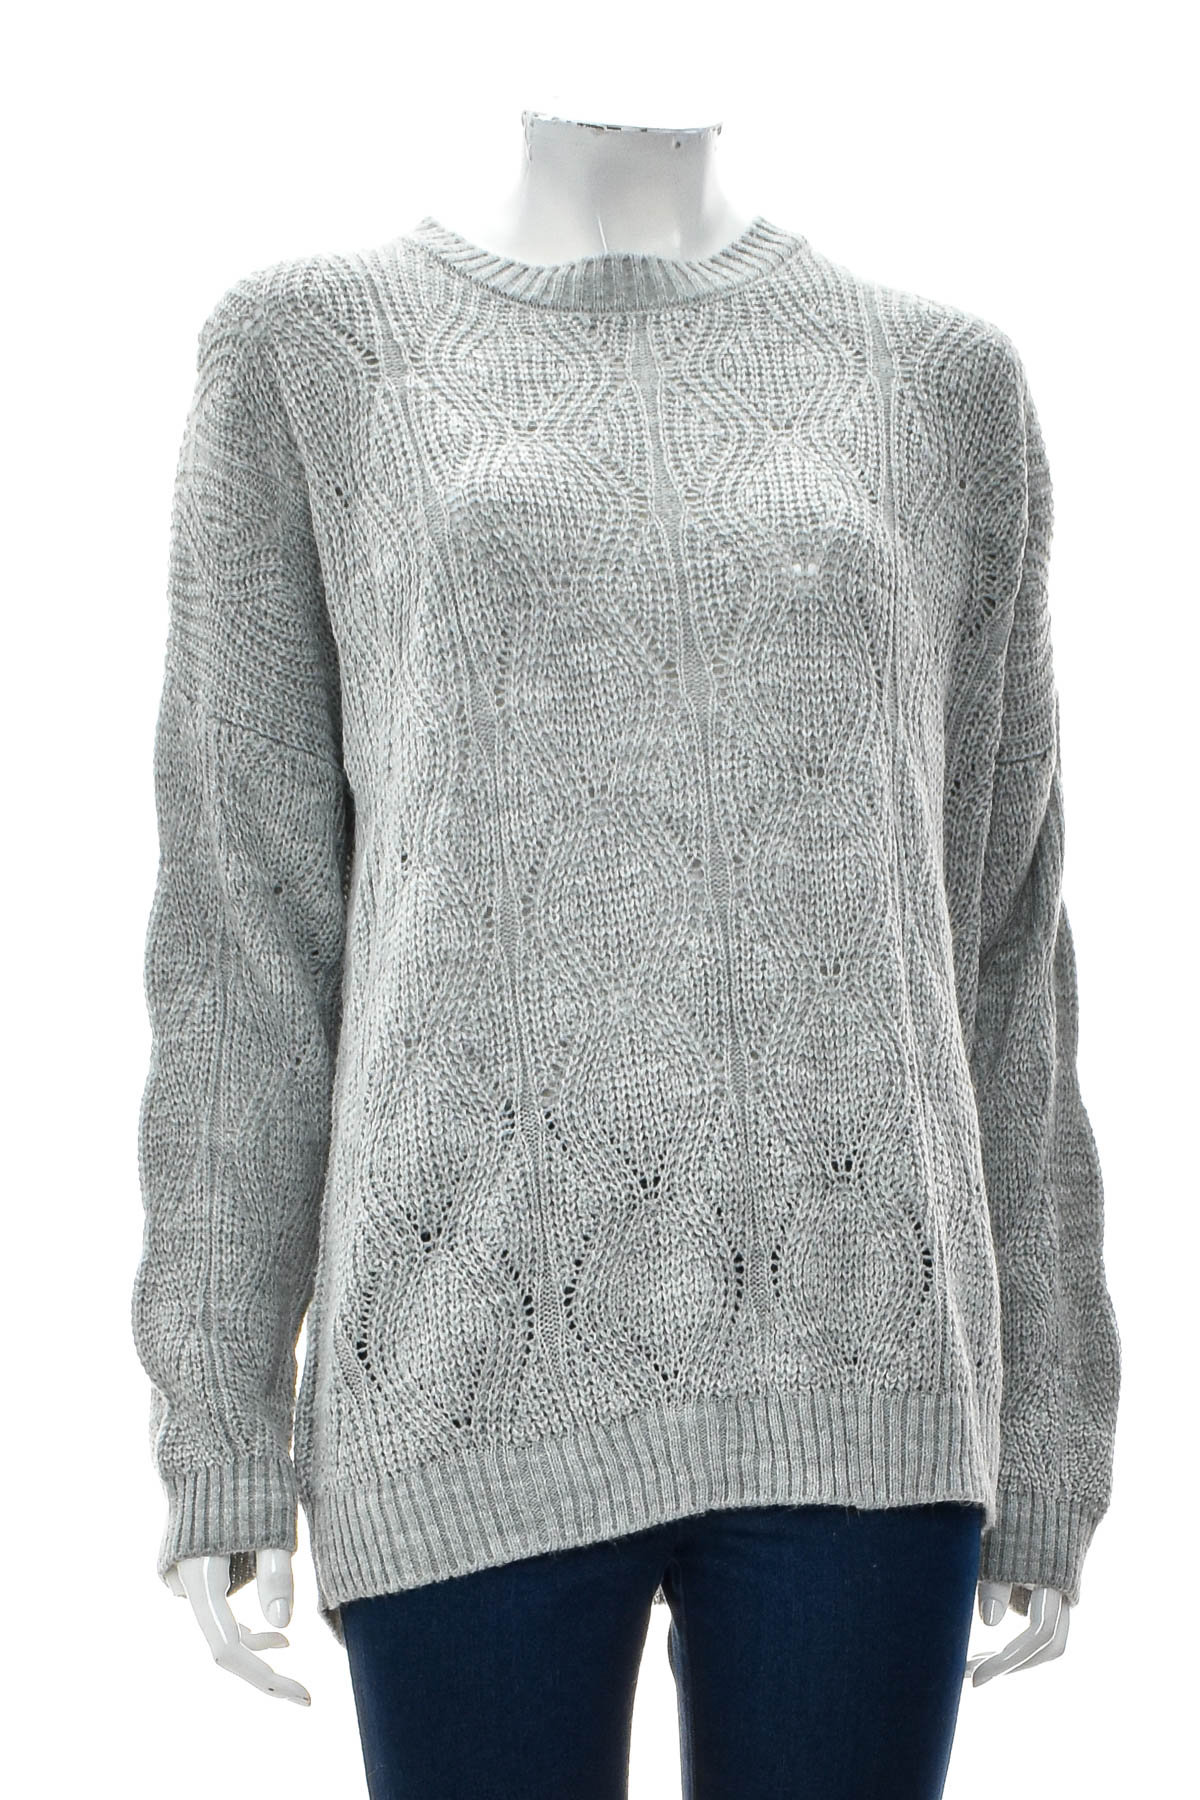 Women's sweater - Infinity Woman - 0